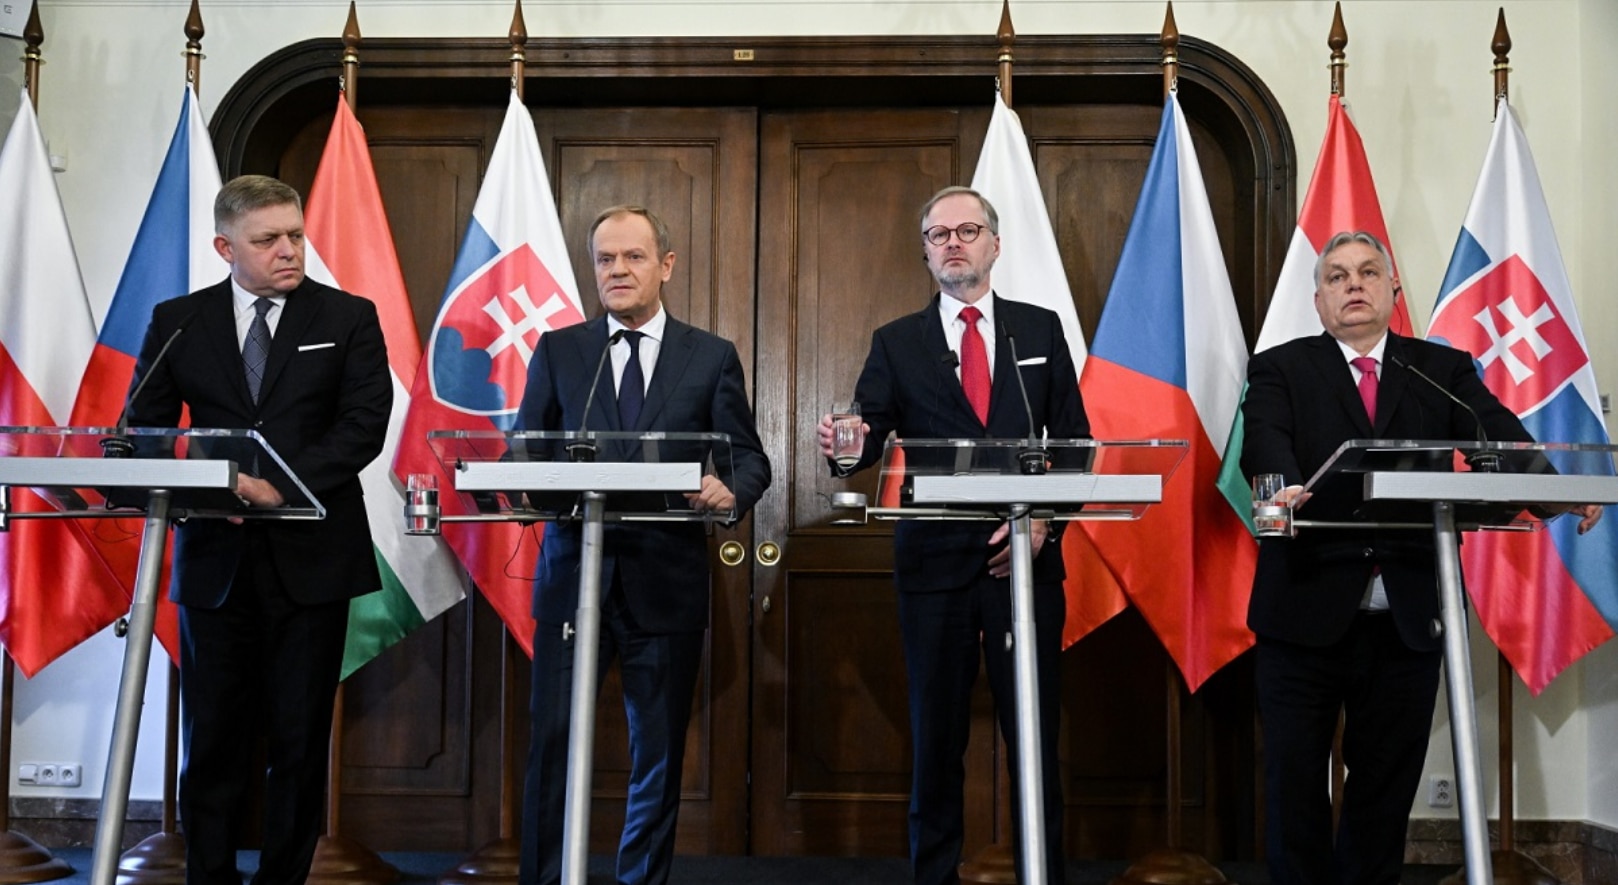 Thế giới - “Bộ tứ” EU-NATO Visegrad chia làm 2 phe vì xung đột Nga-Ukraine